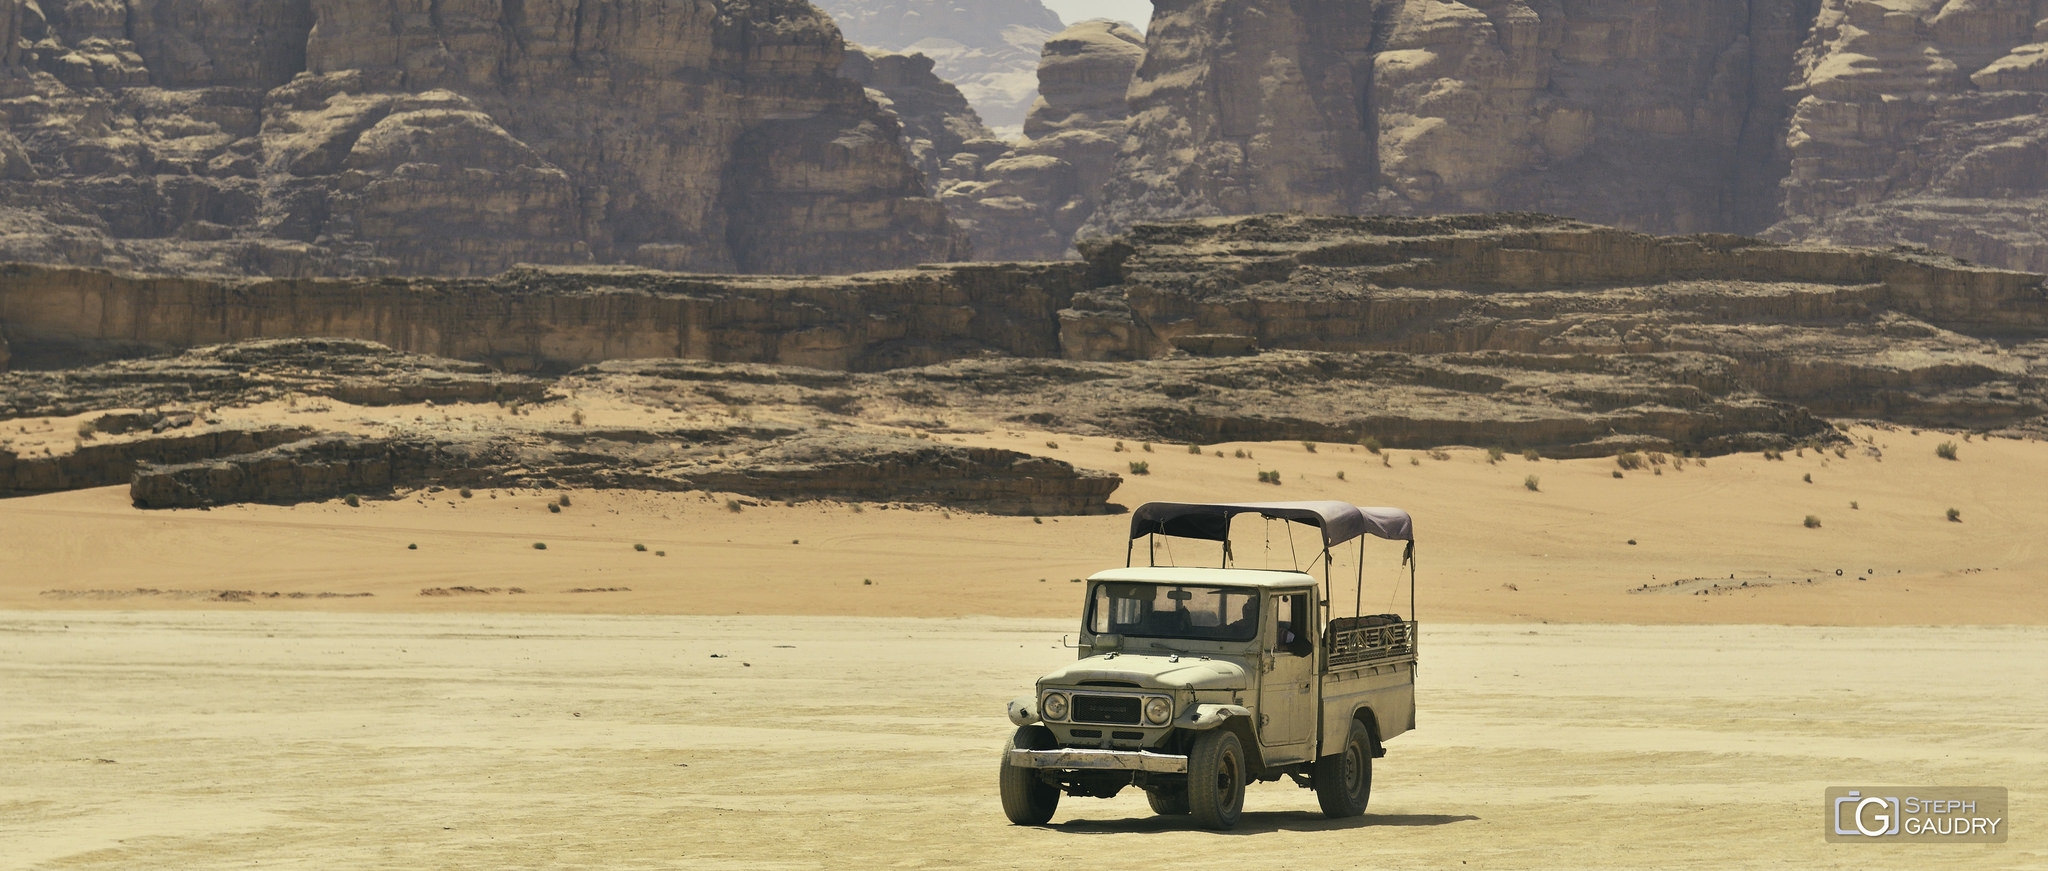 Wadi Rum 4x4 [Click to start slideshow]